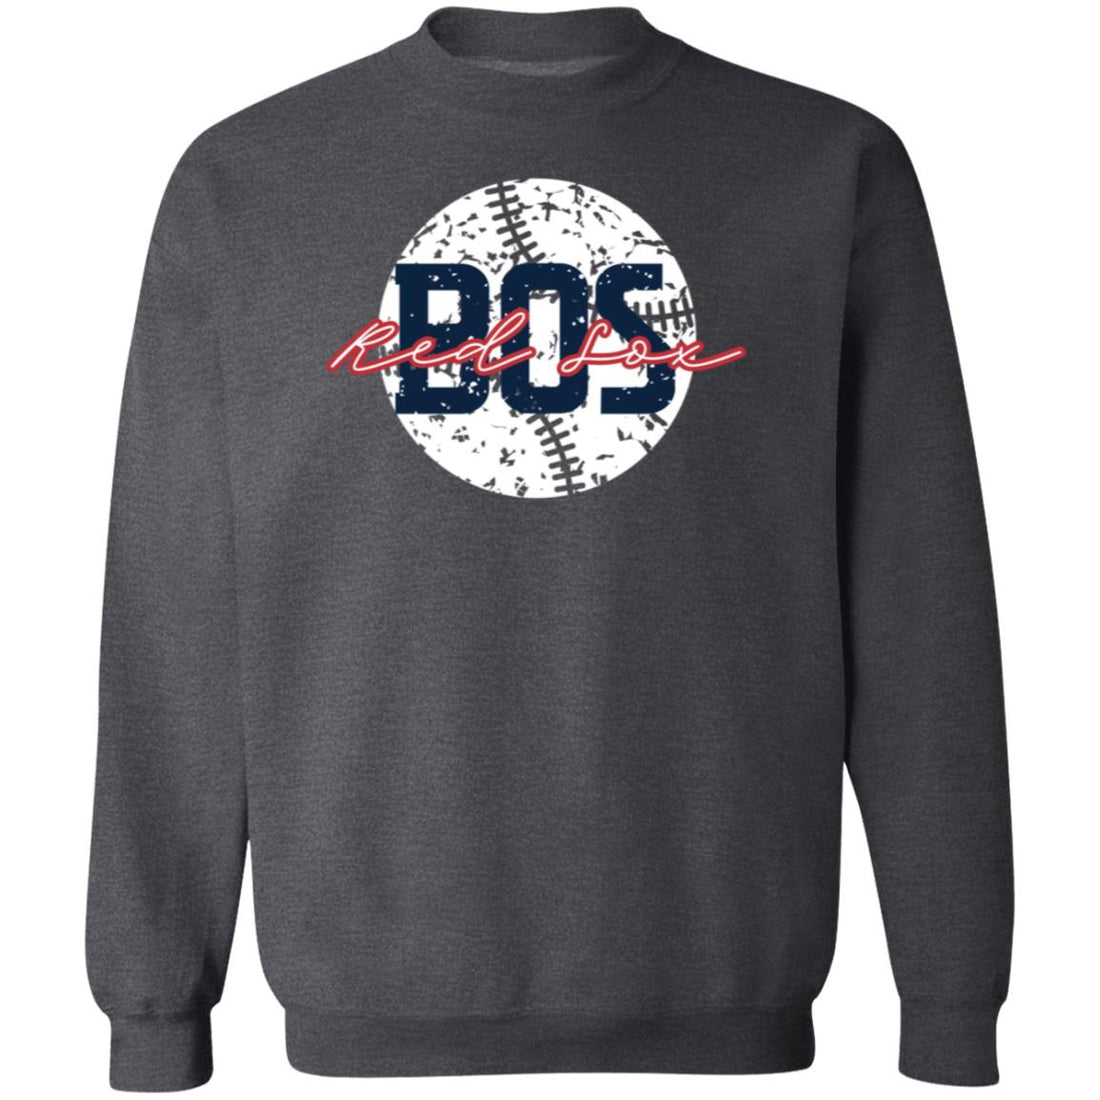 Red Sox Baseball Sweatshirt - Sweatshirts - Positively Sassy - Red Sox Baseball Sweatshirt